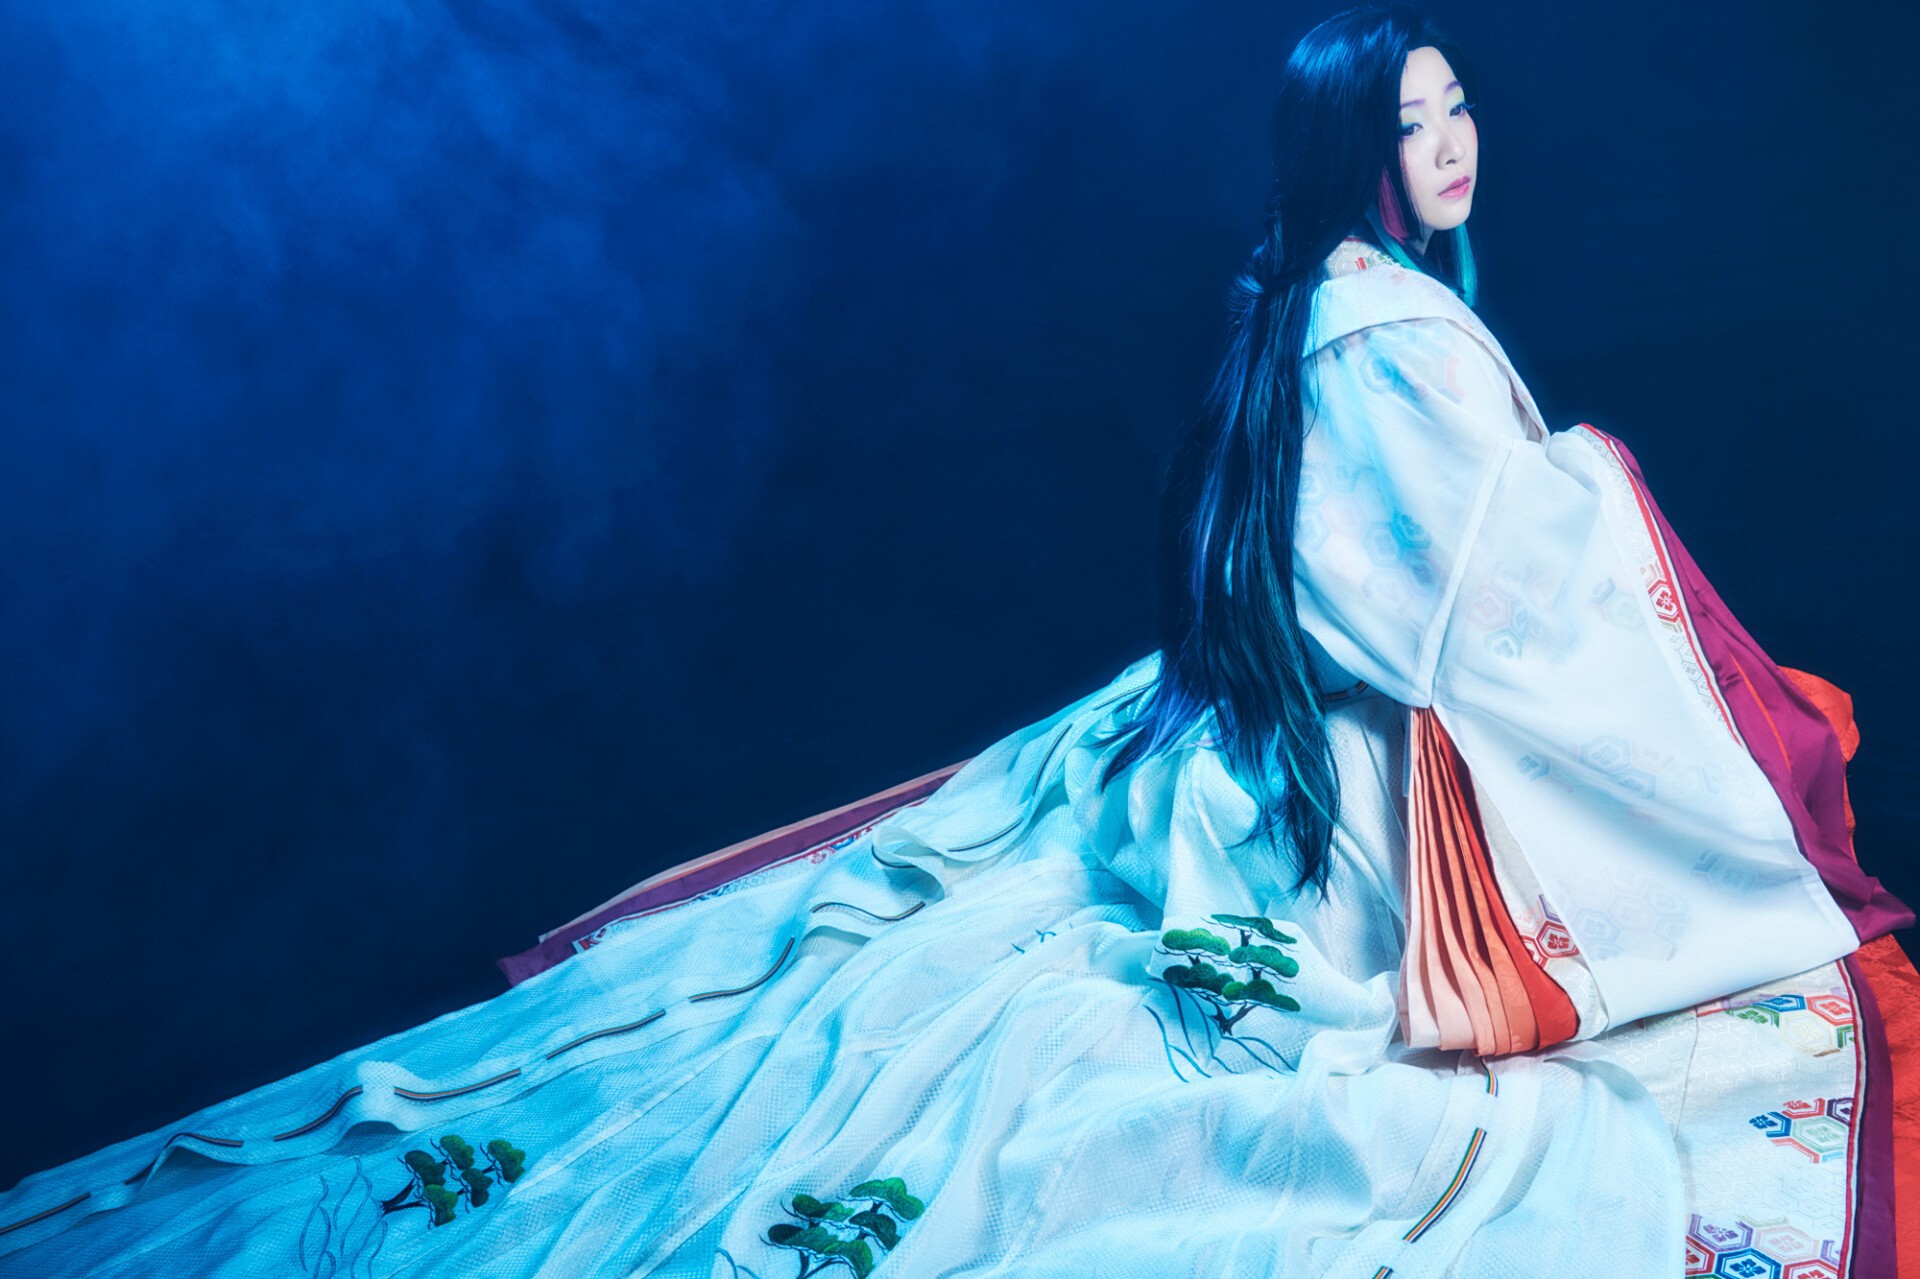 日本の美 を世界に発信するフェス Fantasia かぐや姫役のmay Nへインタビュー Iflyer